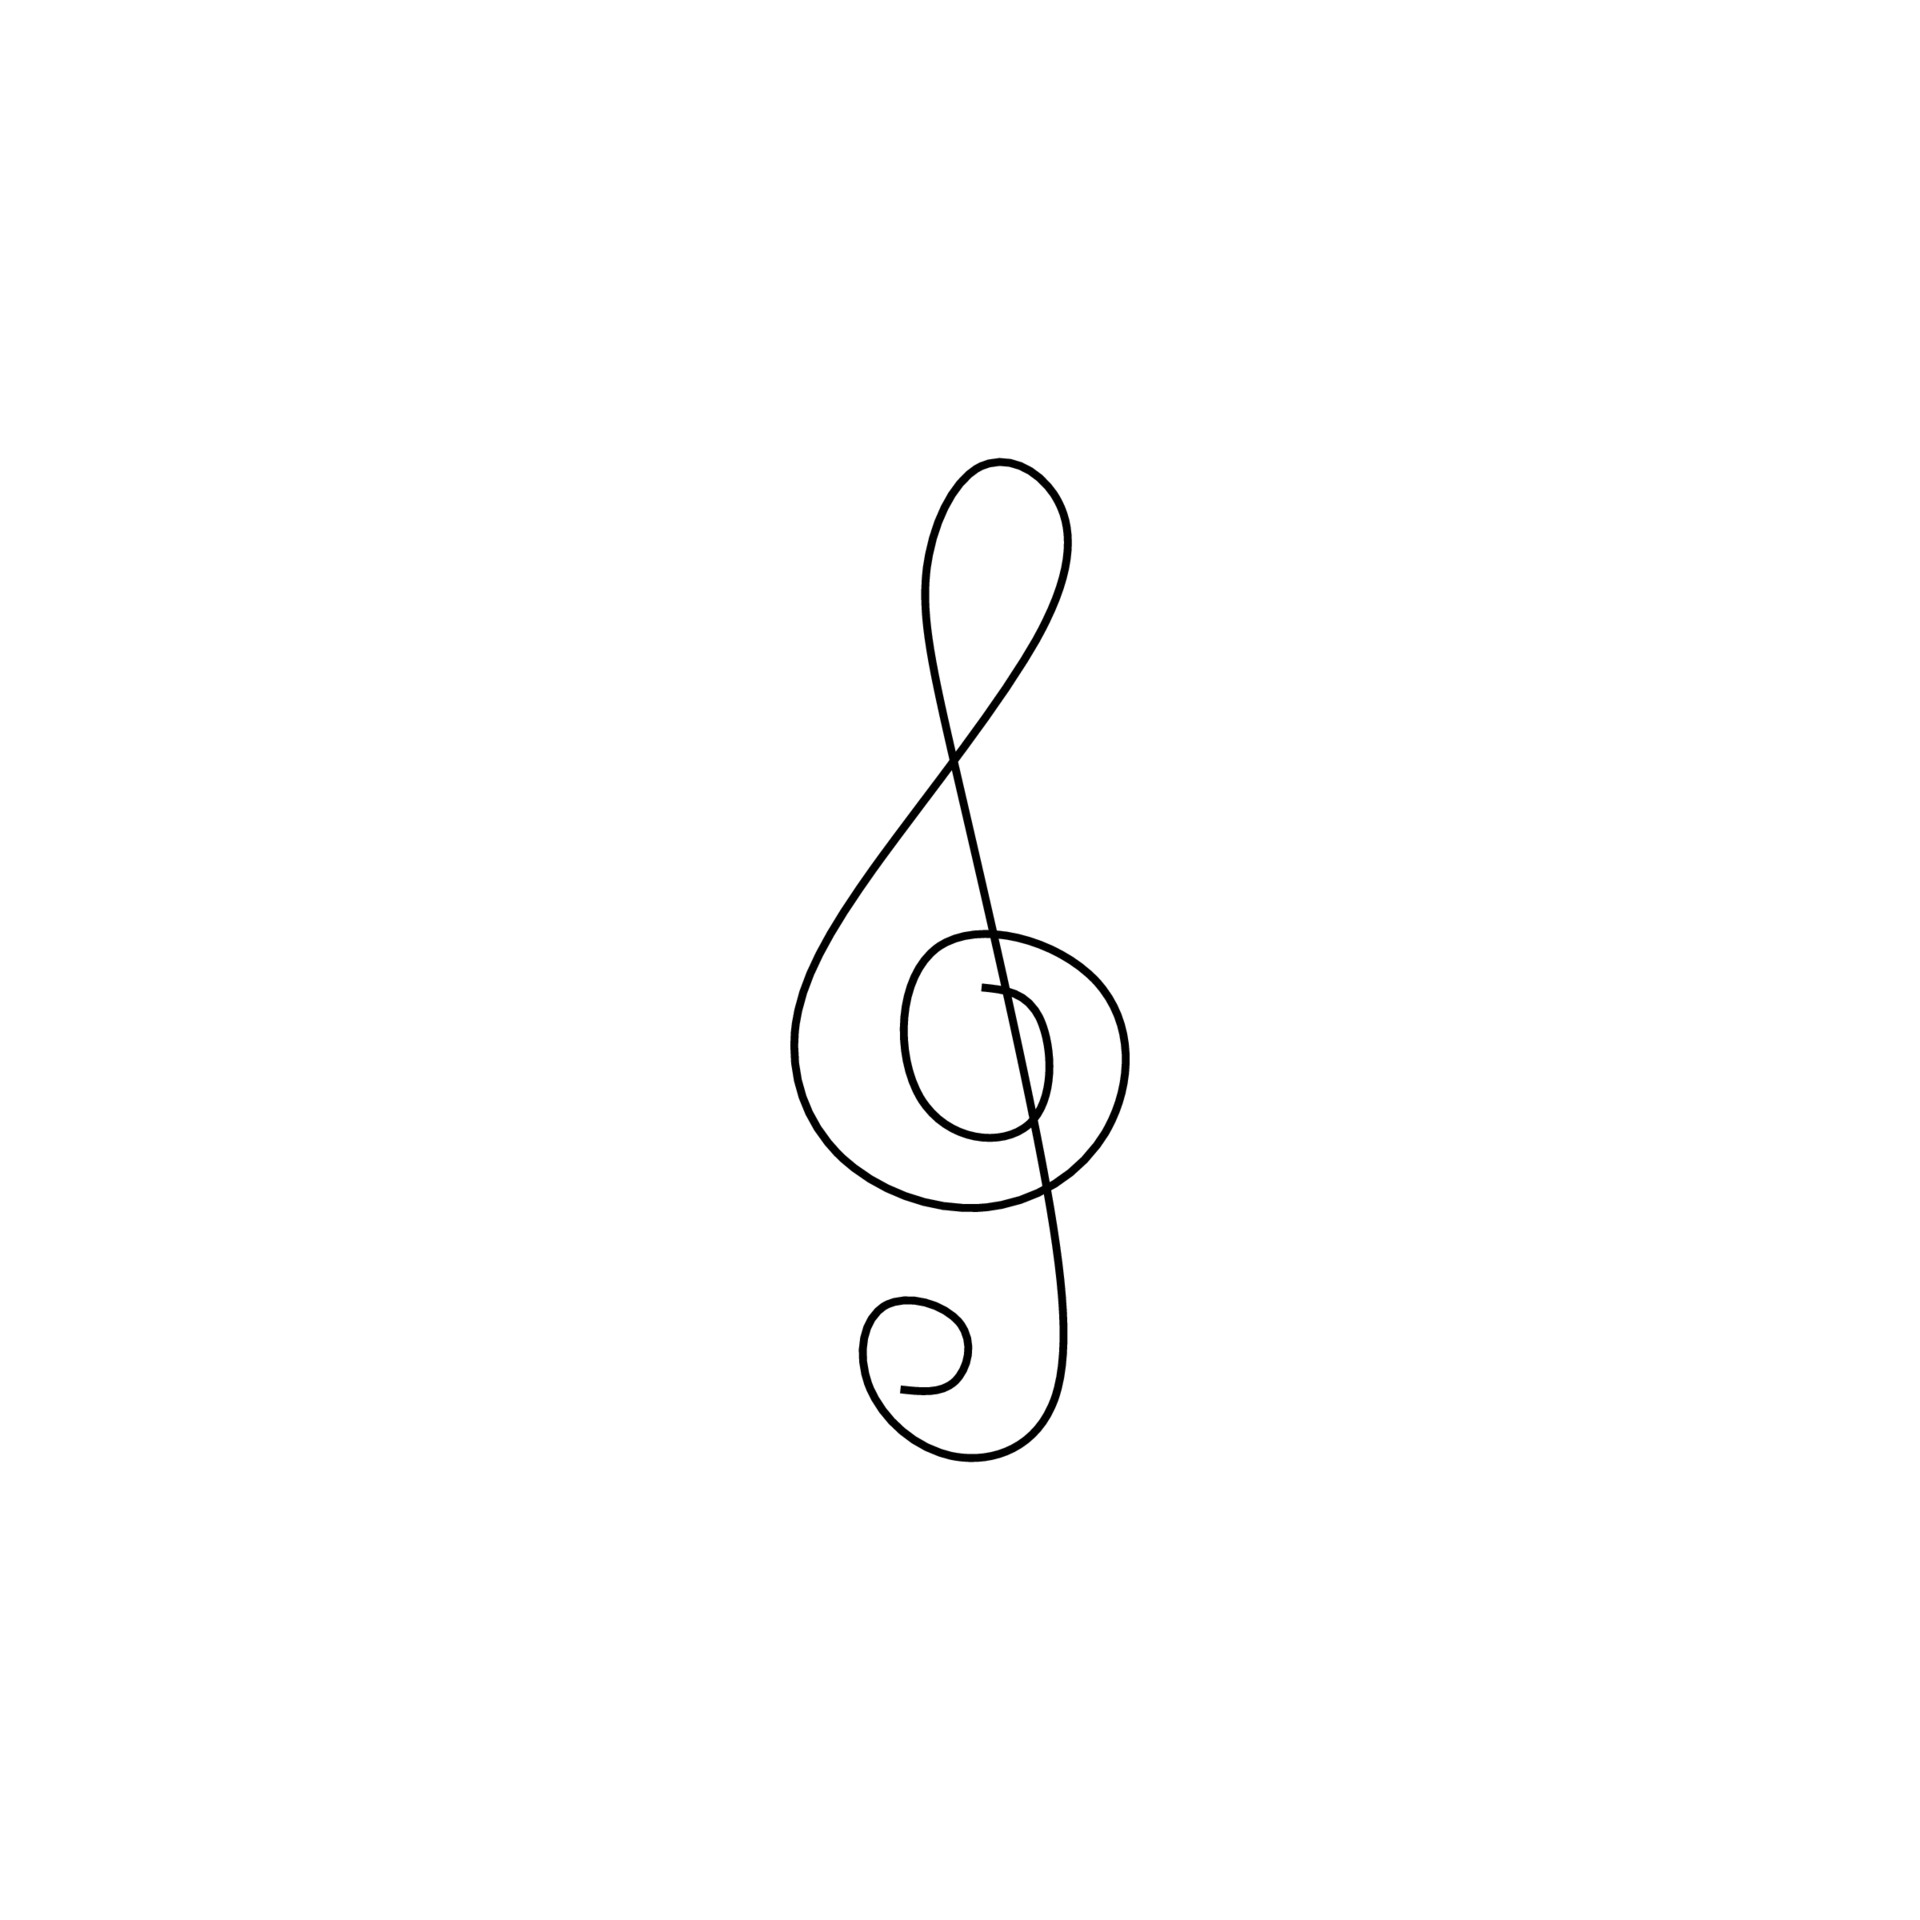 Clé, clef, musique, note classique, sol, notation' Autocollant